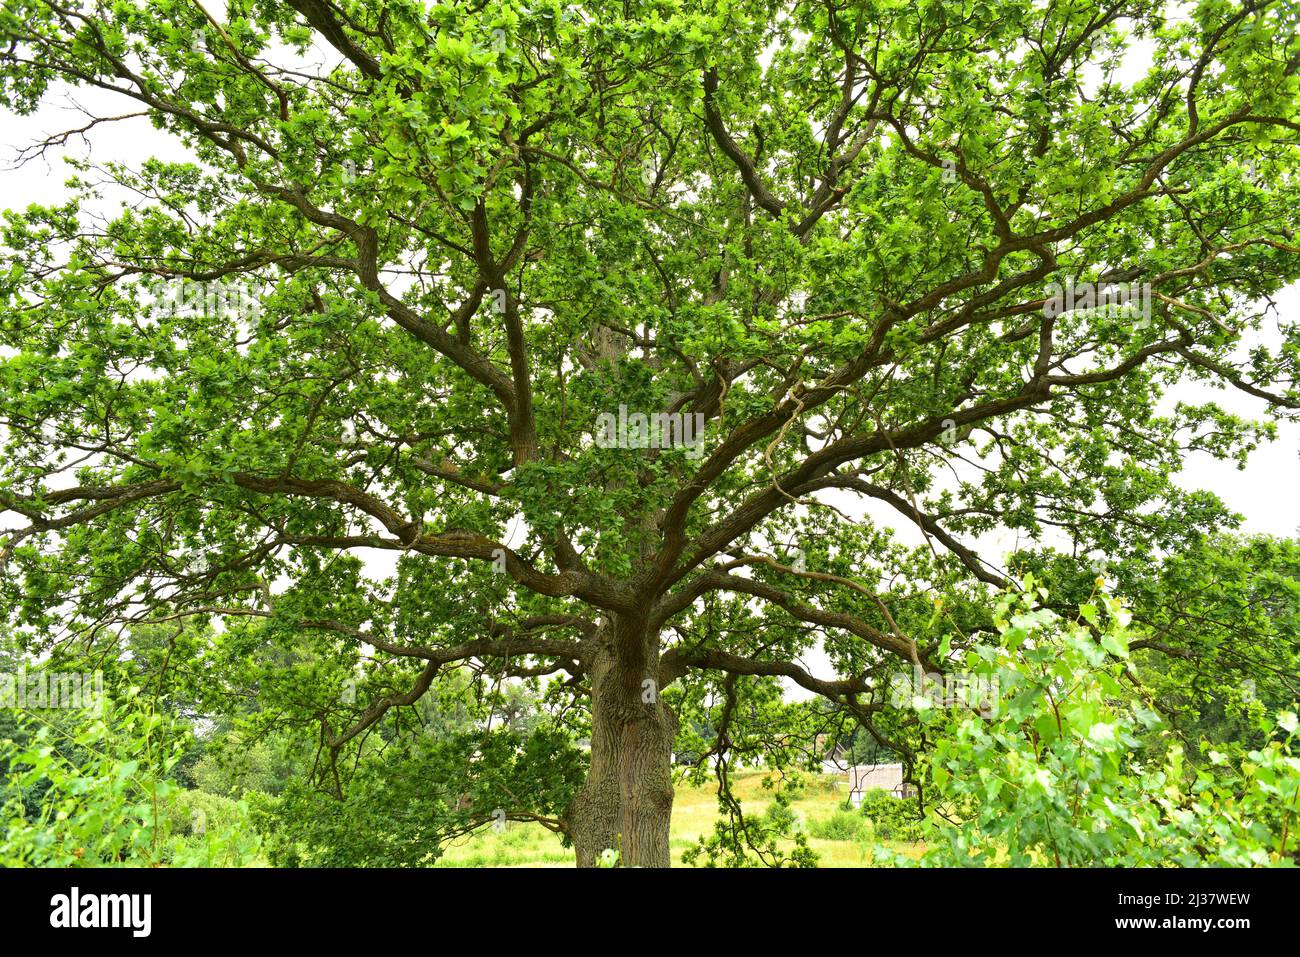 Le chêne commun ou le chêne européen (Quercus robur) est un arbre à feuilles caduques originaire des montagnes d'Europe centrale et du sud de l'Europe, du Caucase et de la Turquie. Ceci Banque D'Images